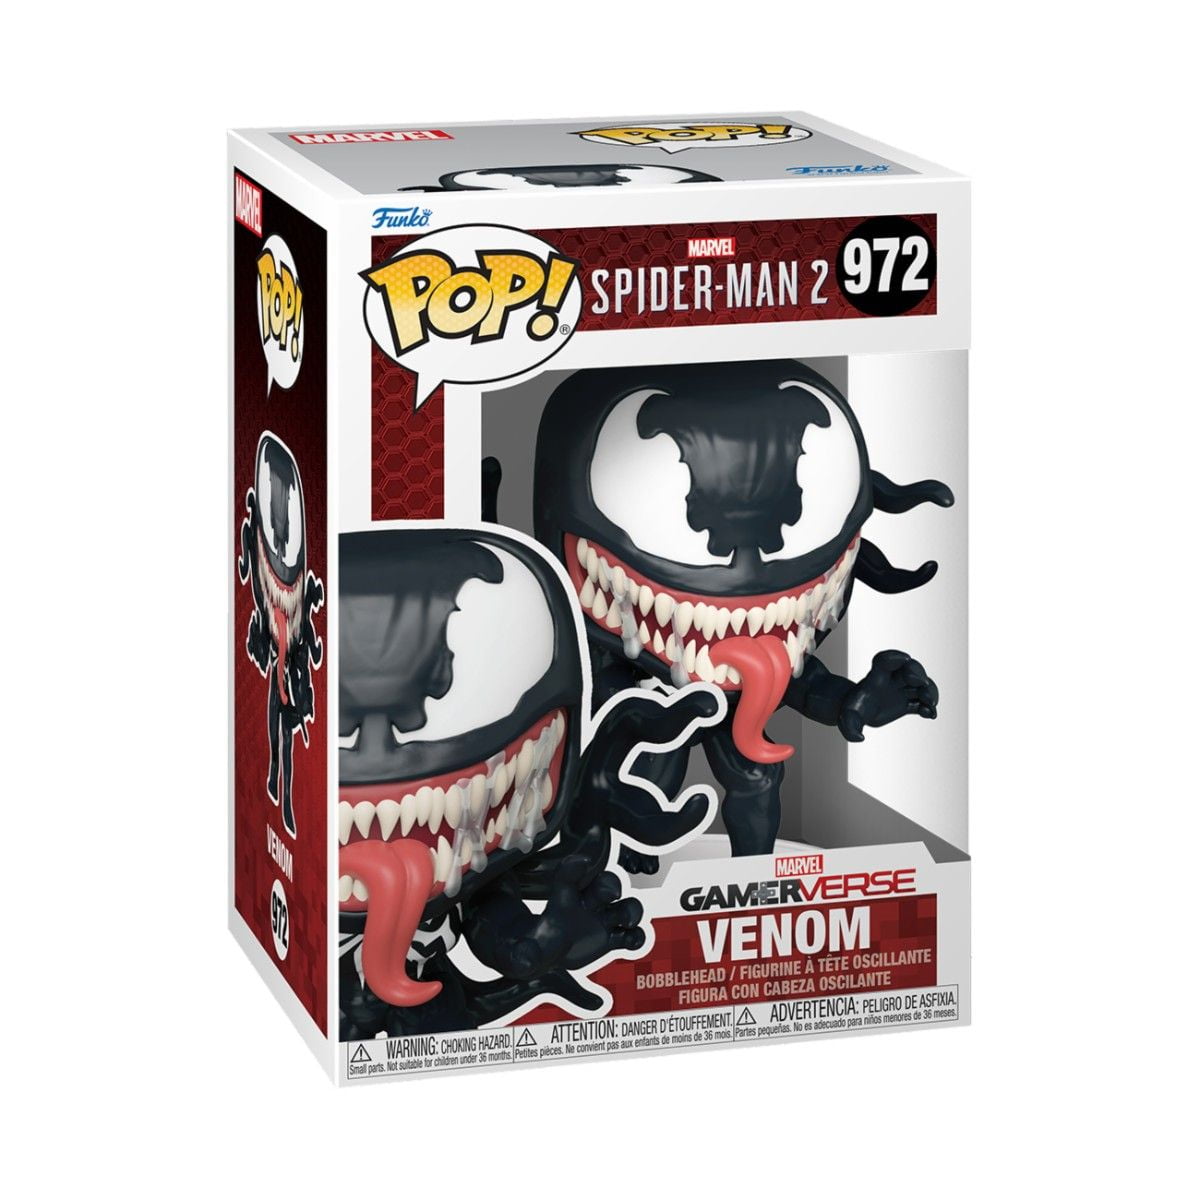 Venom - Spider Man 2 - Funko POP! Vinyl (972)